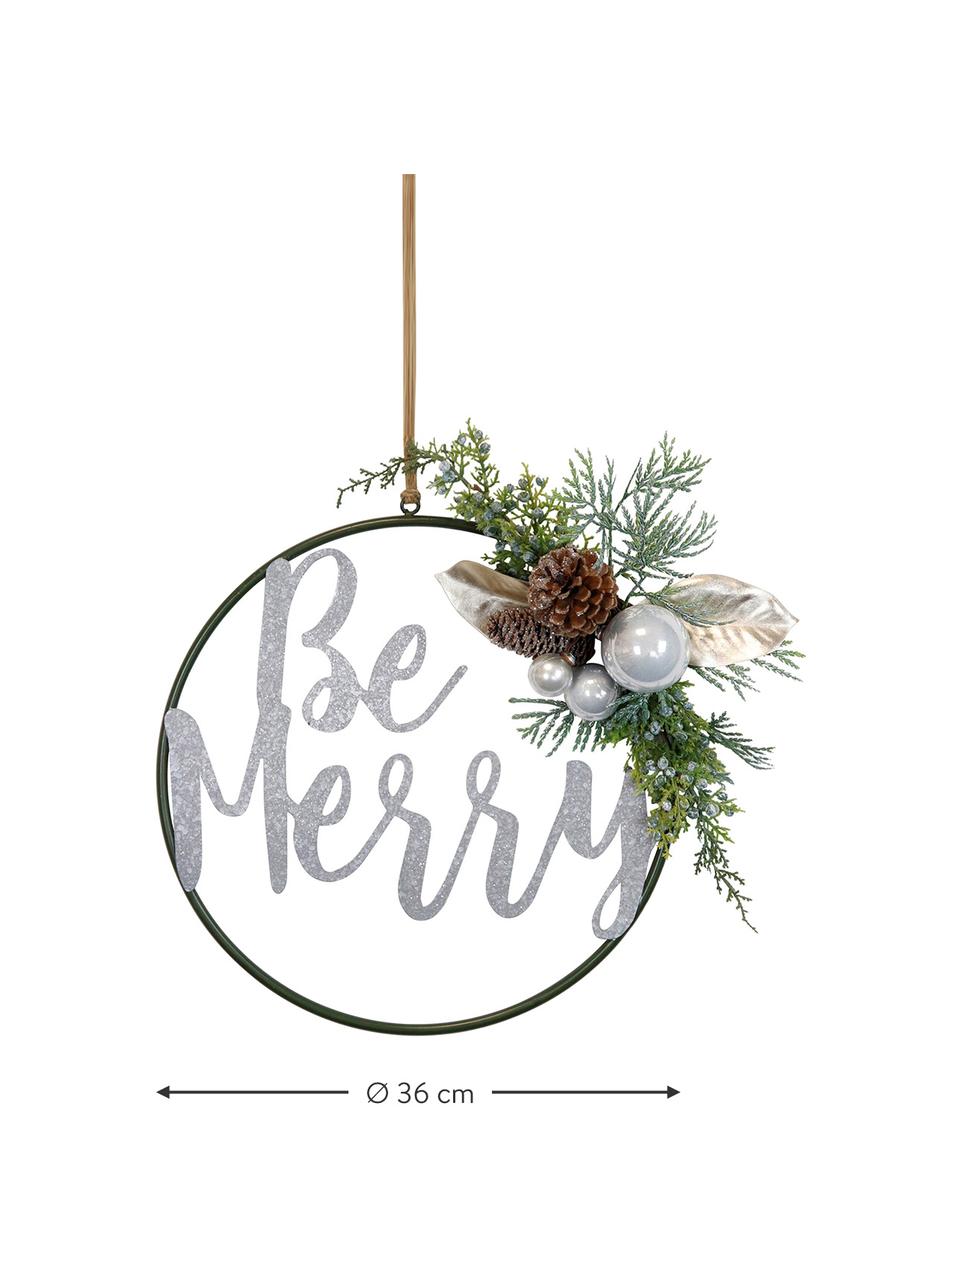 Décoration de Noël à suspendre Be Marry, Métal, plastique, cônes, Vert, couleur argentée, Ø 36 cm